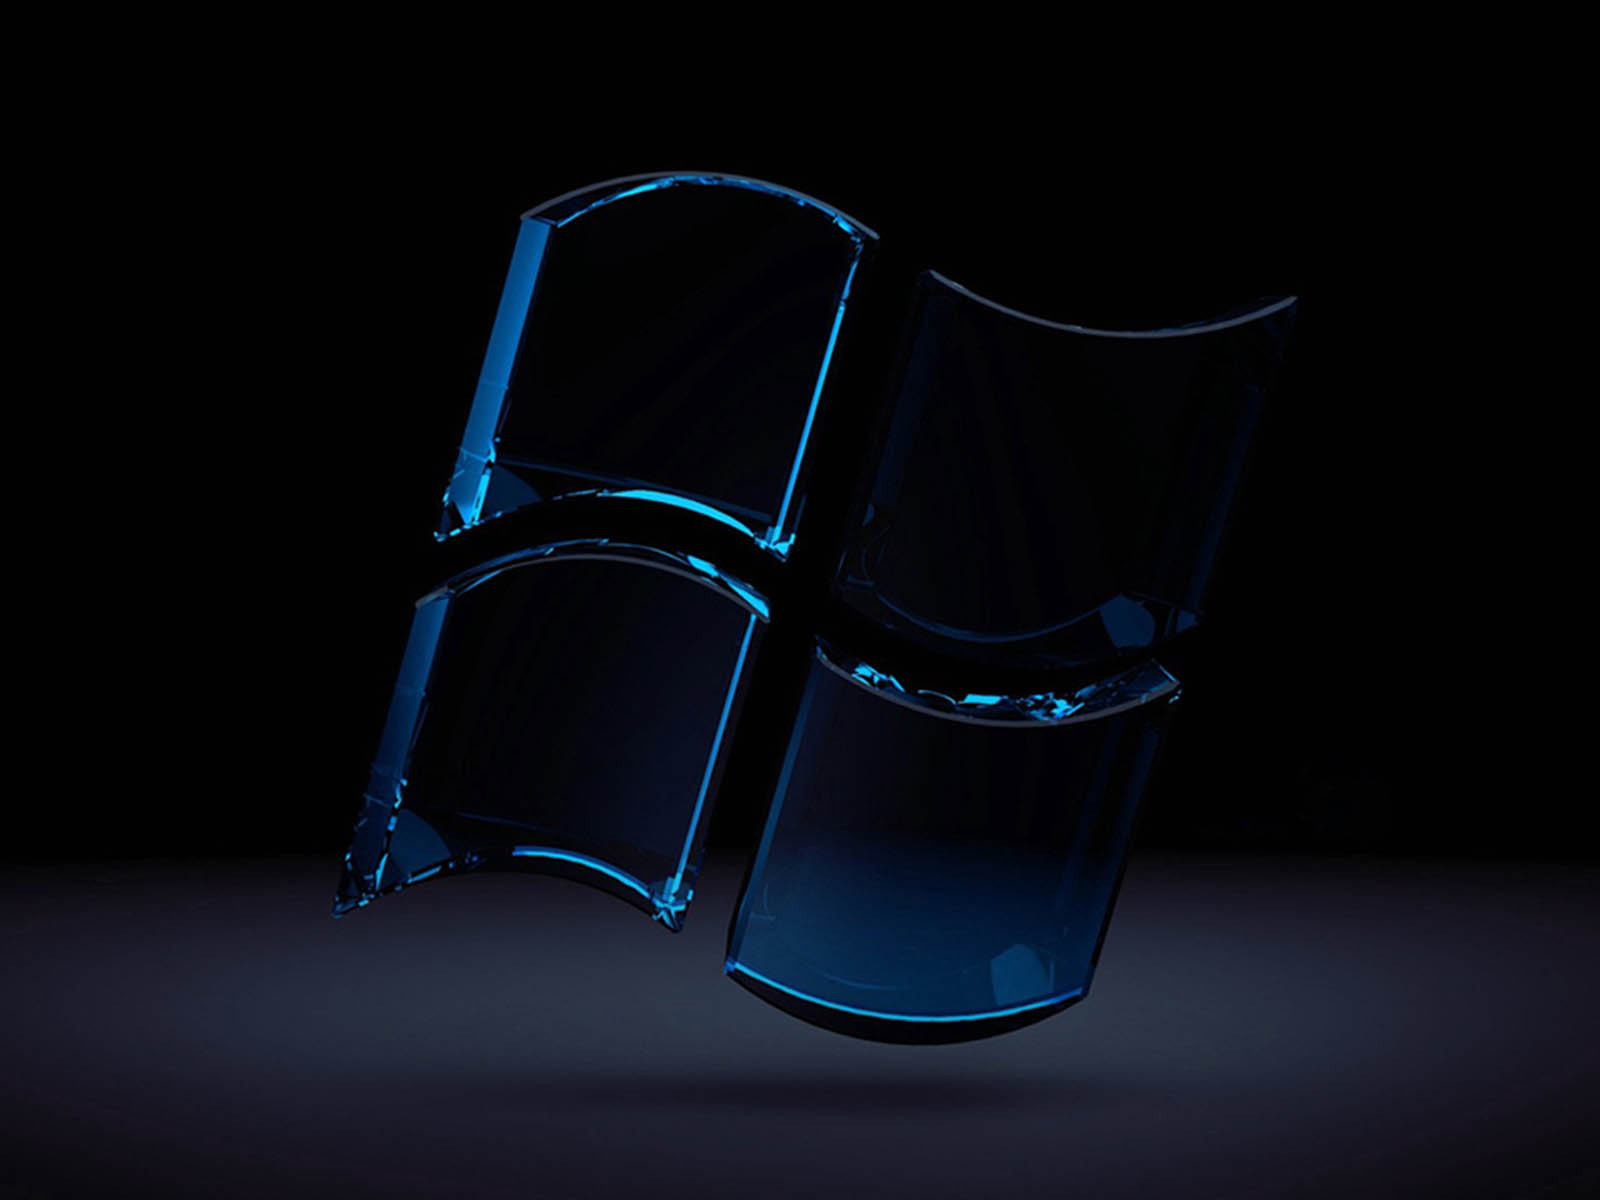 papier peint pour verre,matériau transparent,photographie de nature morte,bleu cobalt,verre,chaise